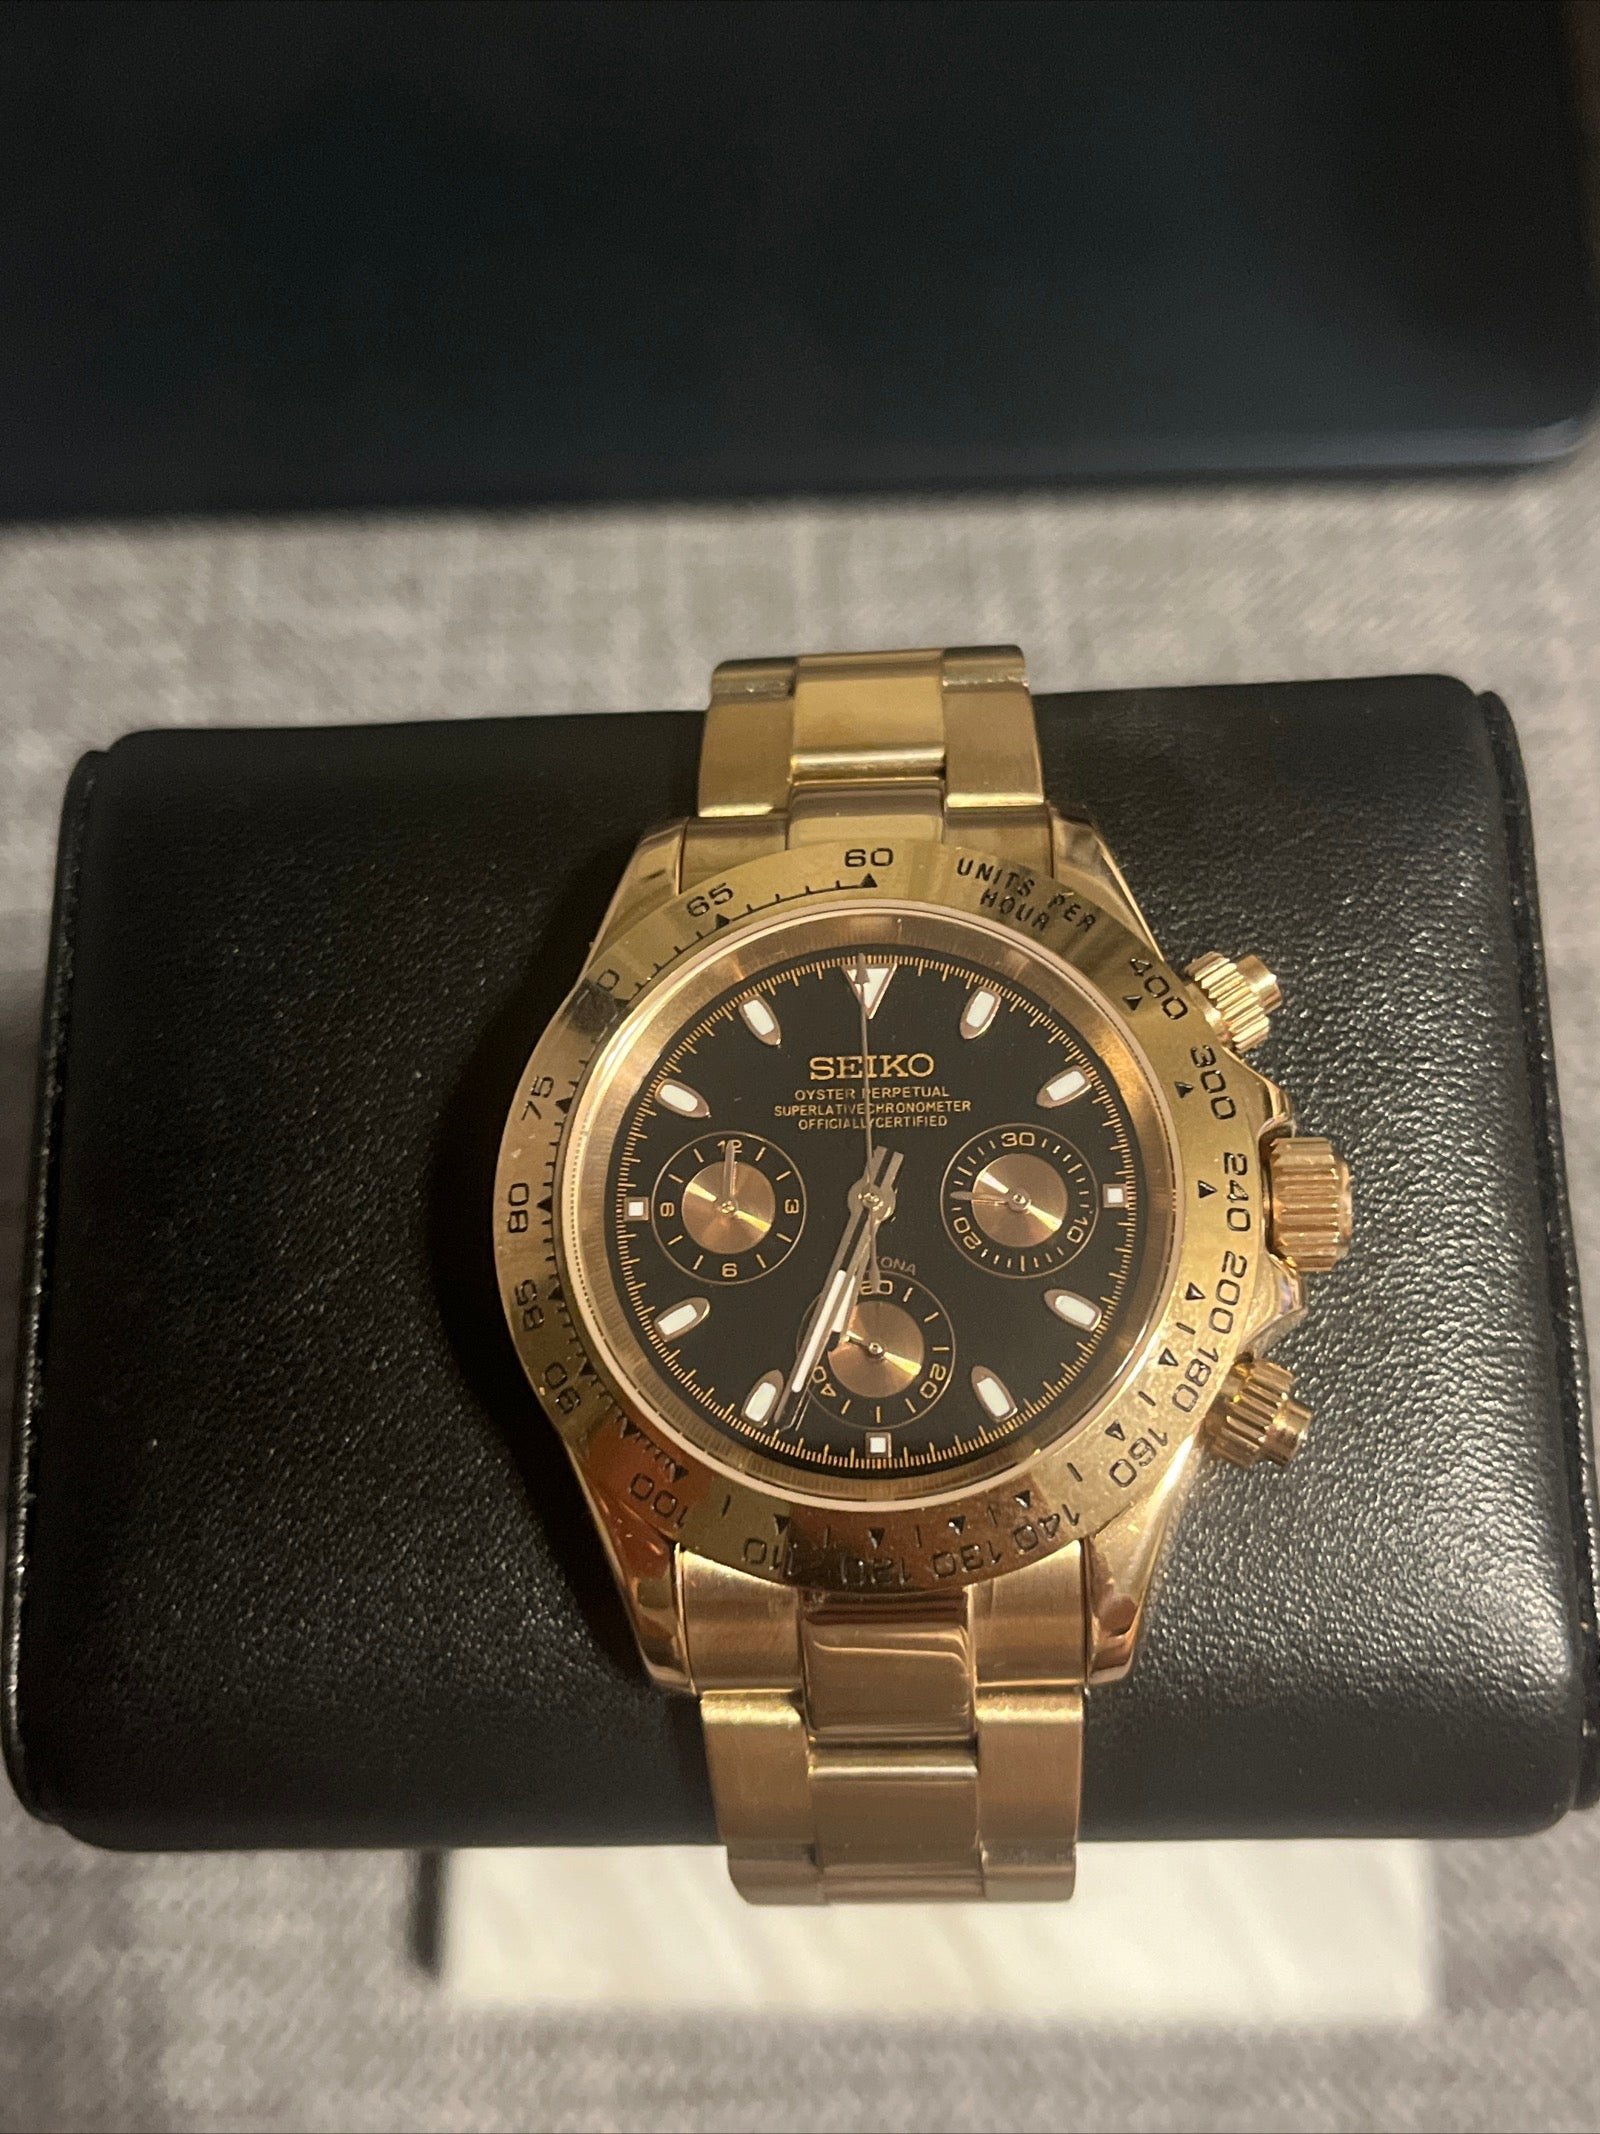 Custom build seiko mod - gold seitona with black dial VK63 meca-quartz chronograph watch Daytona